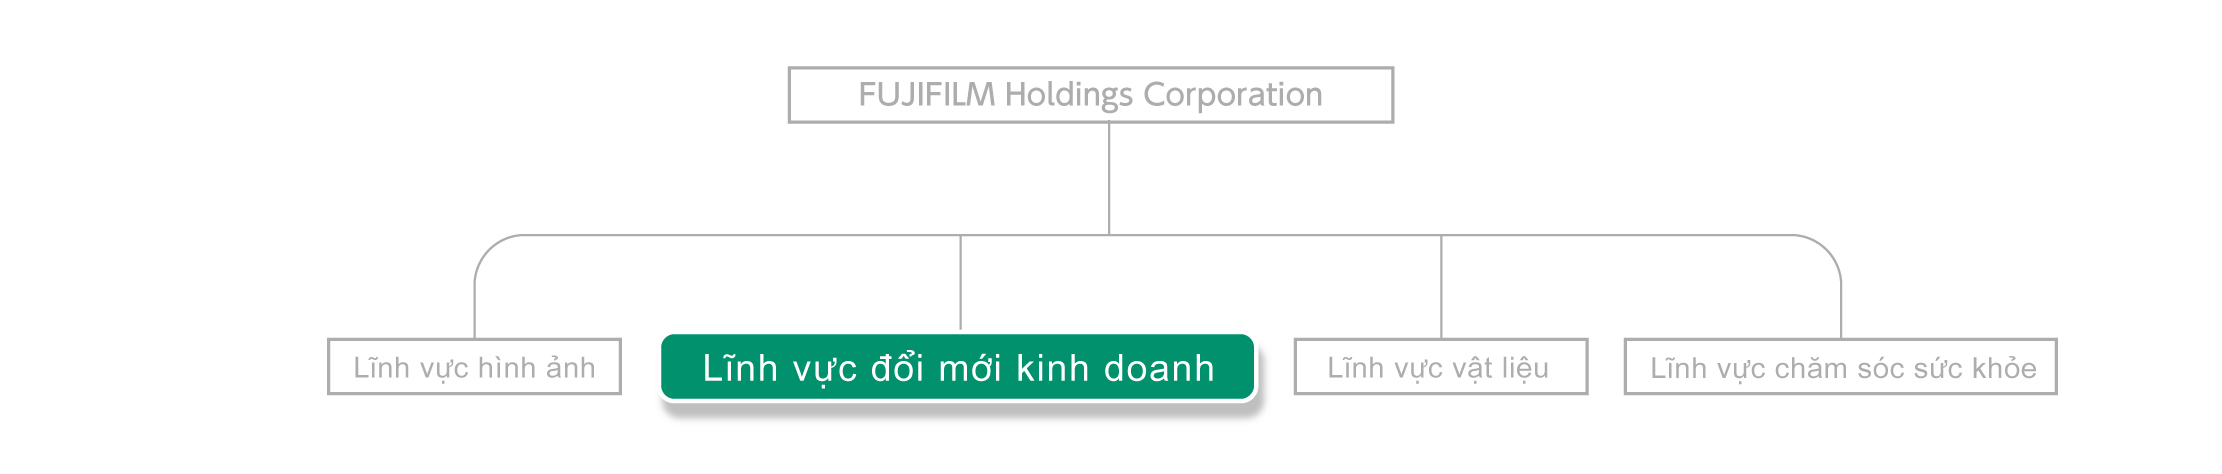 Fujifilm Holdings đang triển khai 4 lĩnh vực kinh doanh, và đang góp phần vào sự phát triển của khách hàng thông qua hoạt động kinh doanh đổi mới kinh doanh.